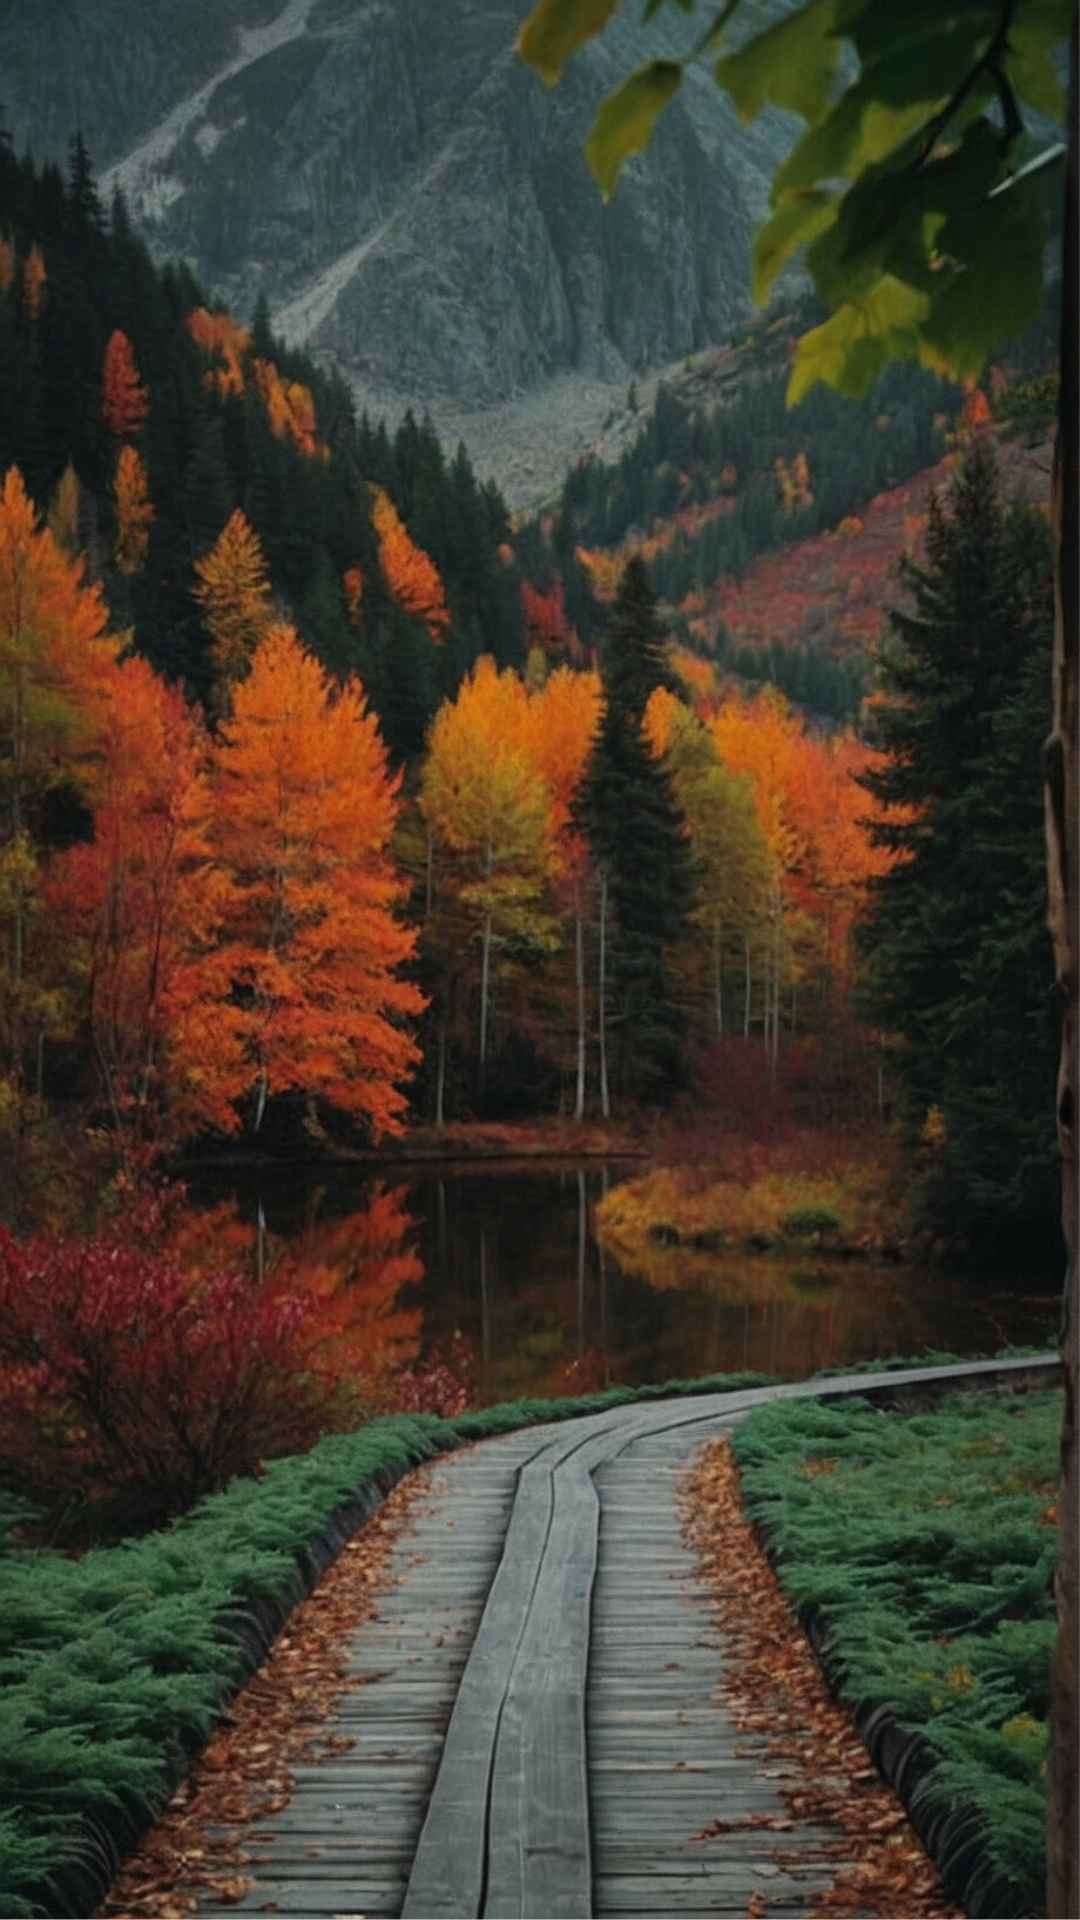 Autumn Symphony: A Palette of Colors